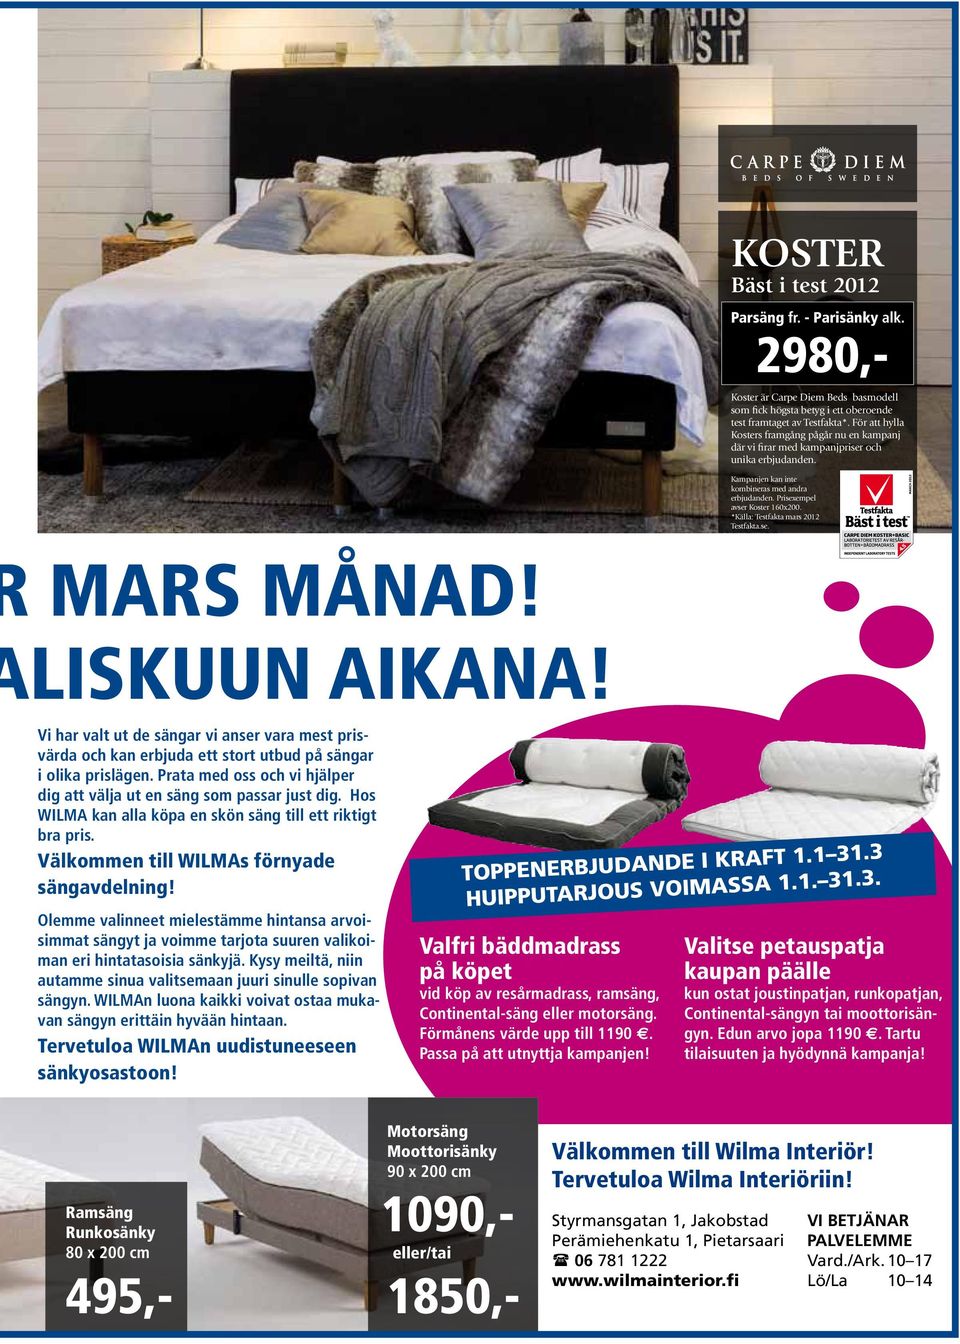 *Källa: Testfakta mars 2012 Testfakta.se. MARS MÅNAD! LISKUUN AIKANA! Vi har valt ut de sängar vi anser vara mest prisvärda och kan erbjuda ett stort utbud på sängar i olika prislägen.